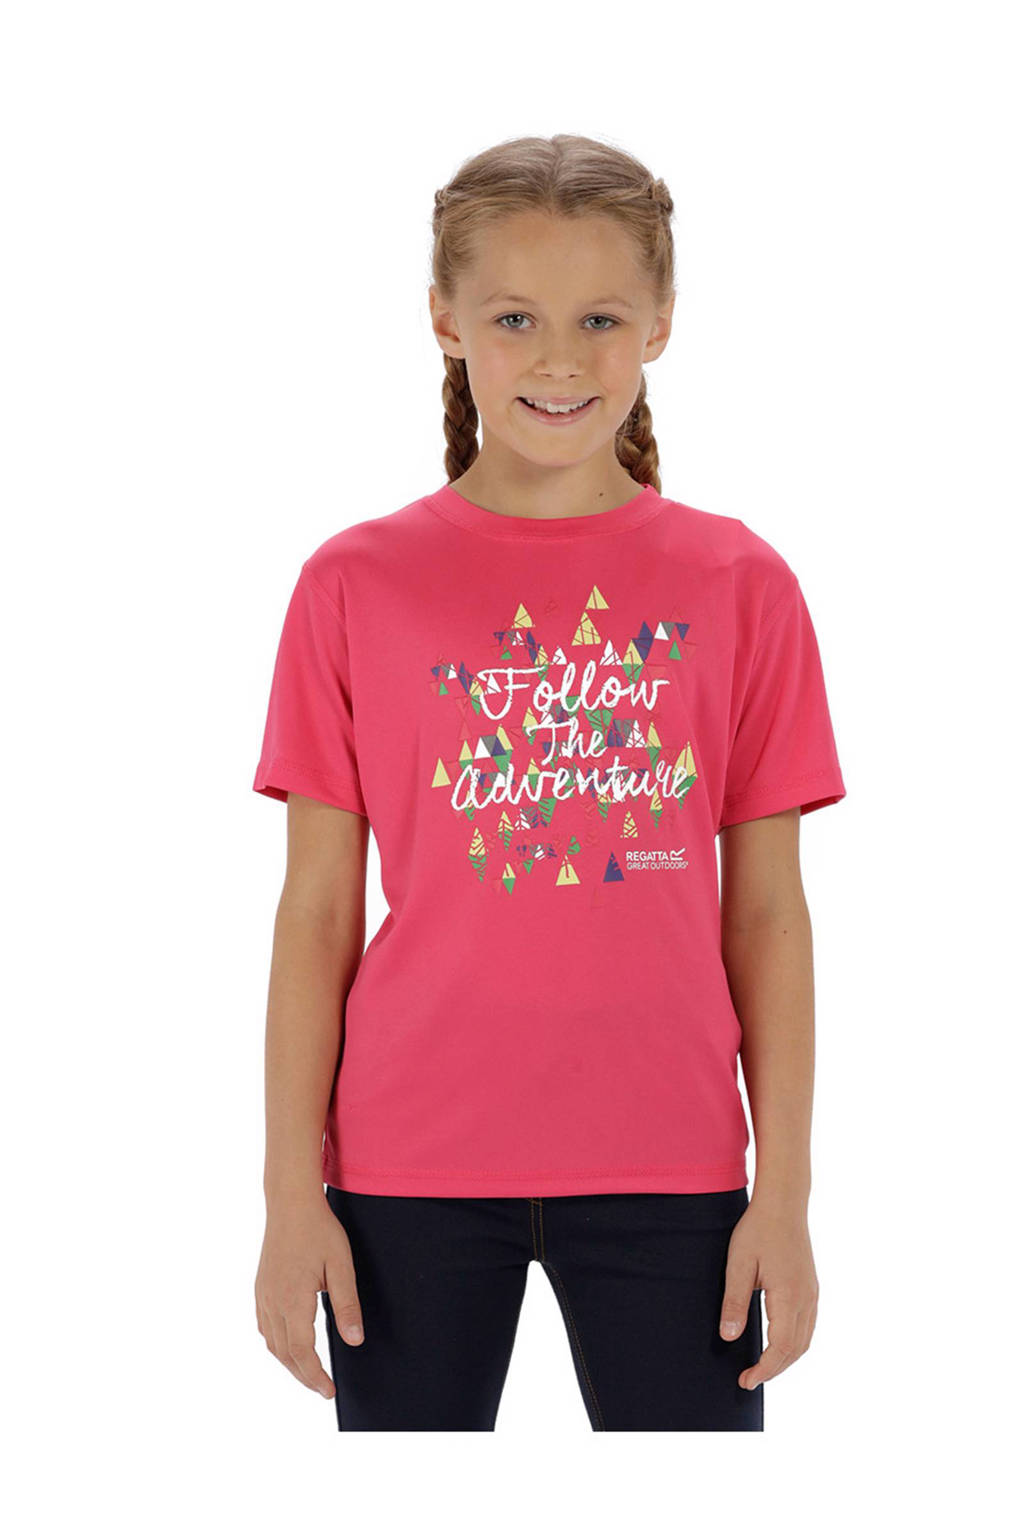 Ontoegankelijk Bij Steil Regatta T-shirt met printopdruk roze | wehkamp